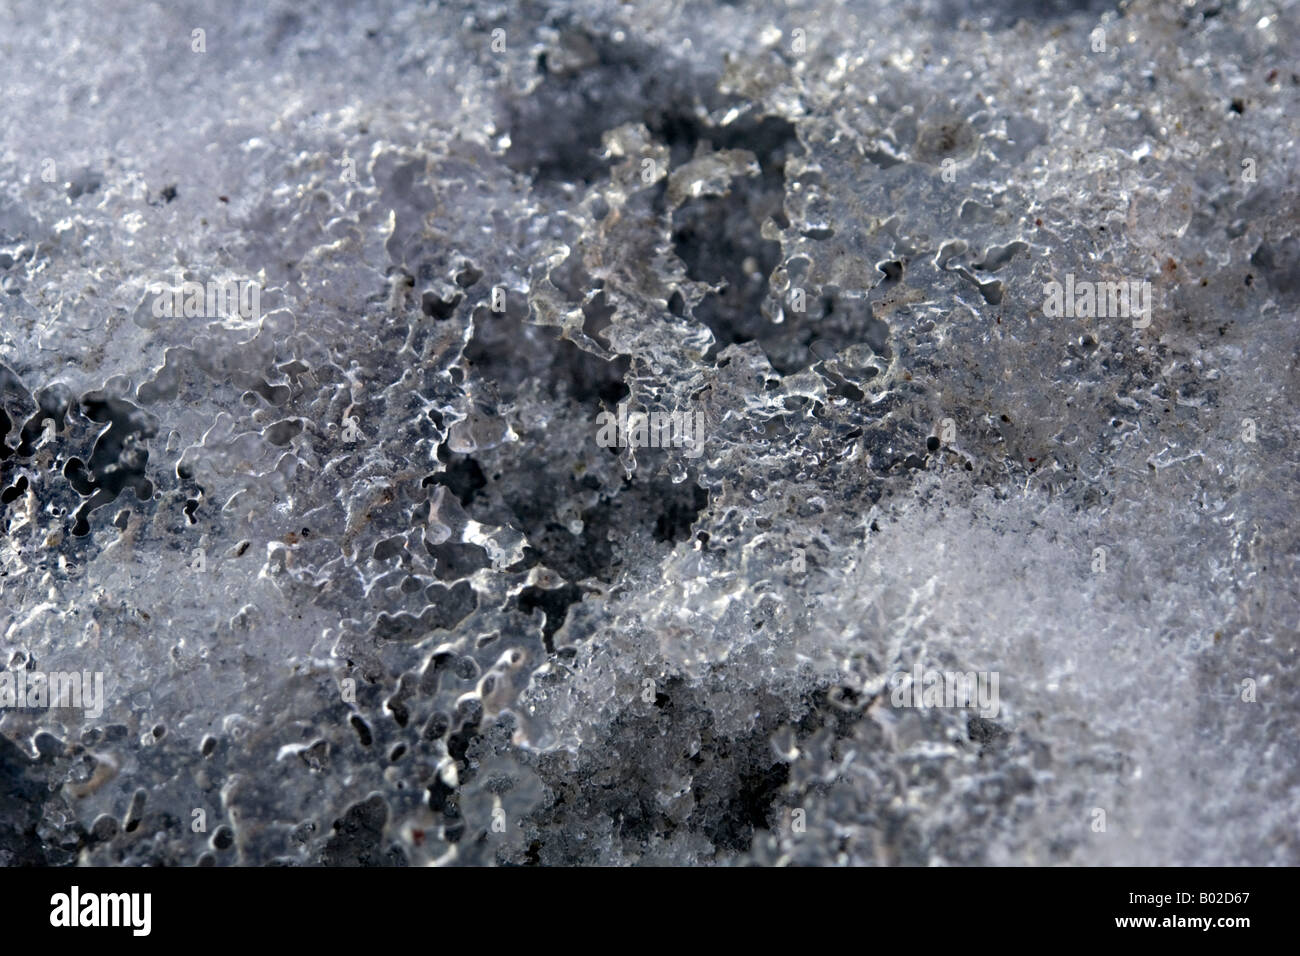 La molla del disgelo - fusione di neve e ghiaccio. Foto Stock